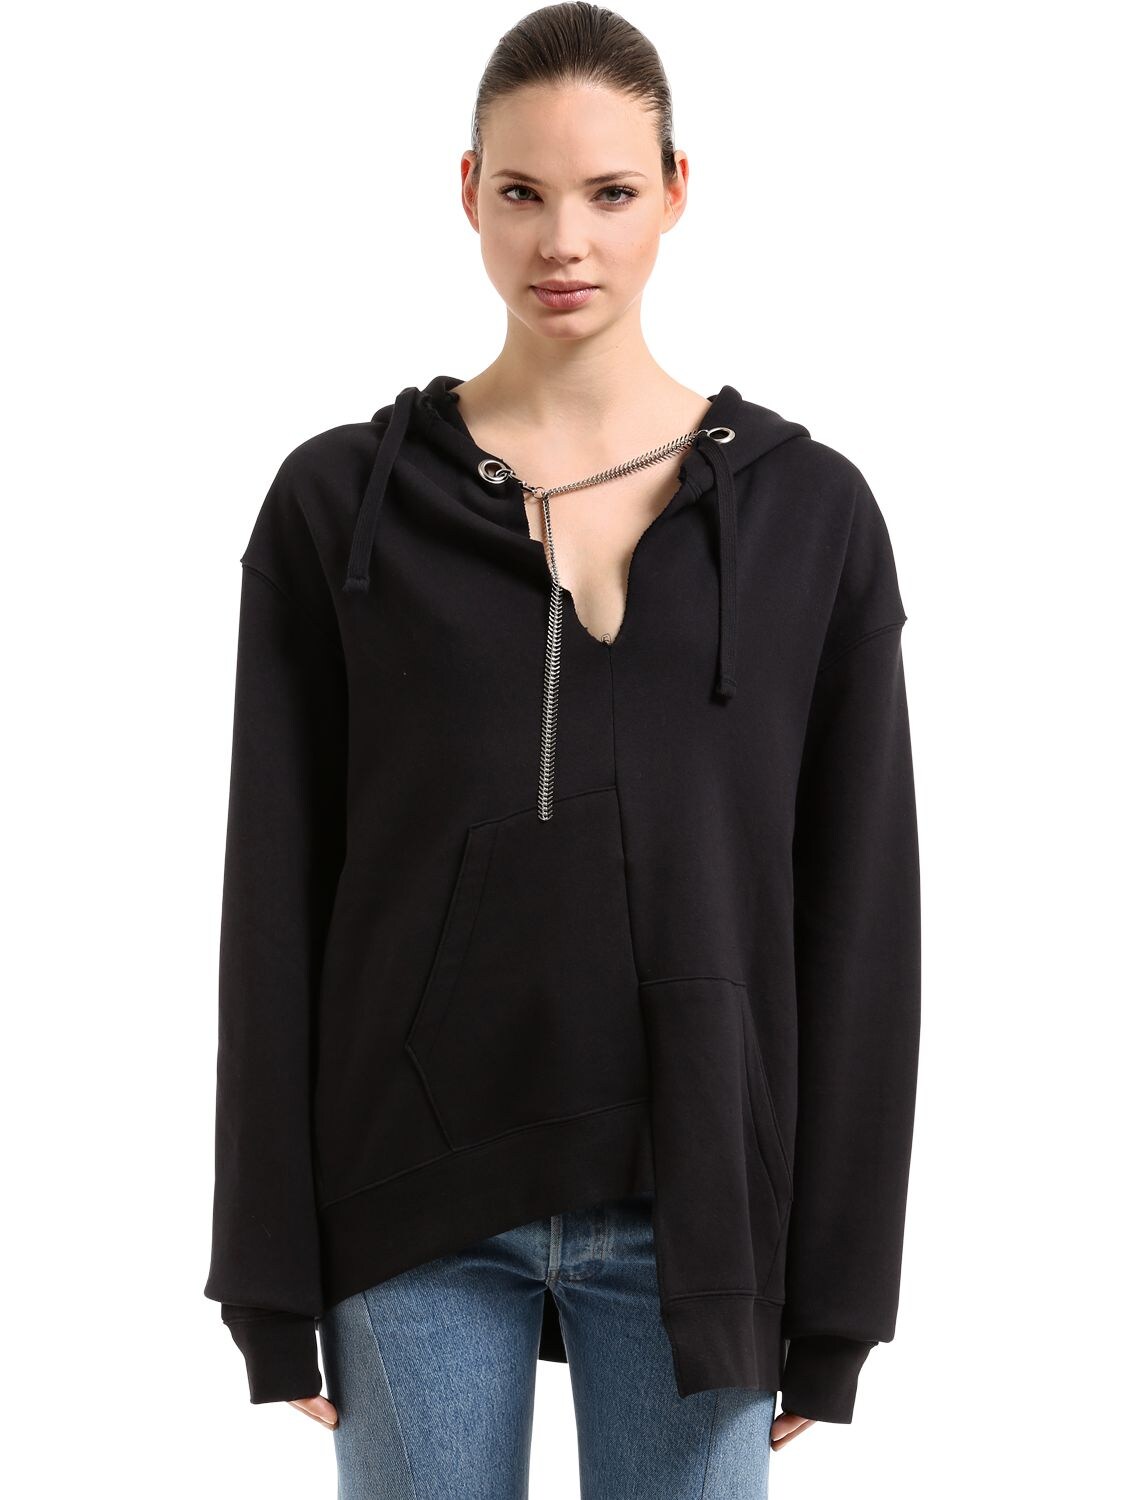 Act N°1 Oversized Sweatshirt Hoodie W/ Chain In Black